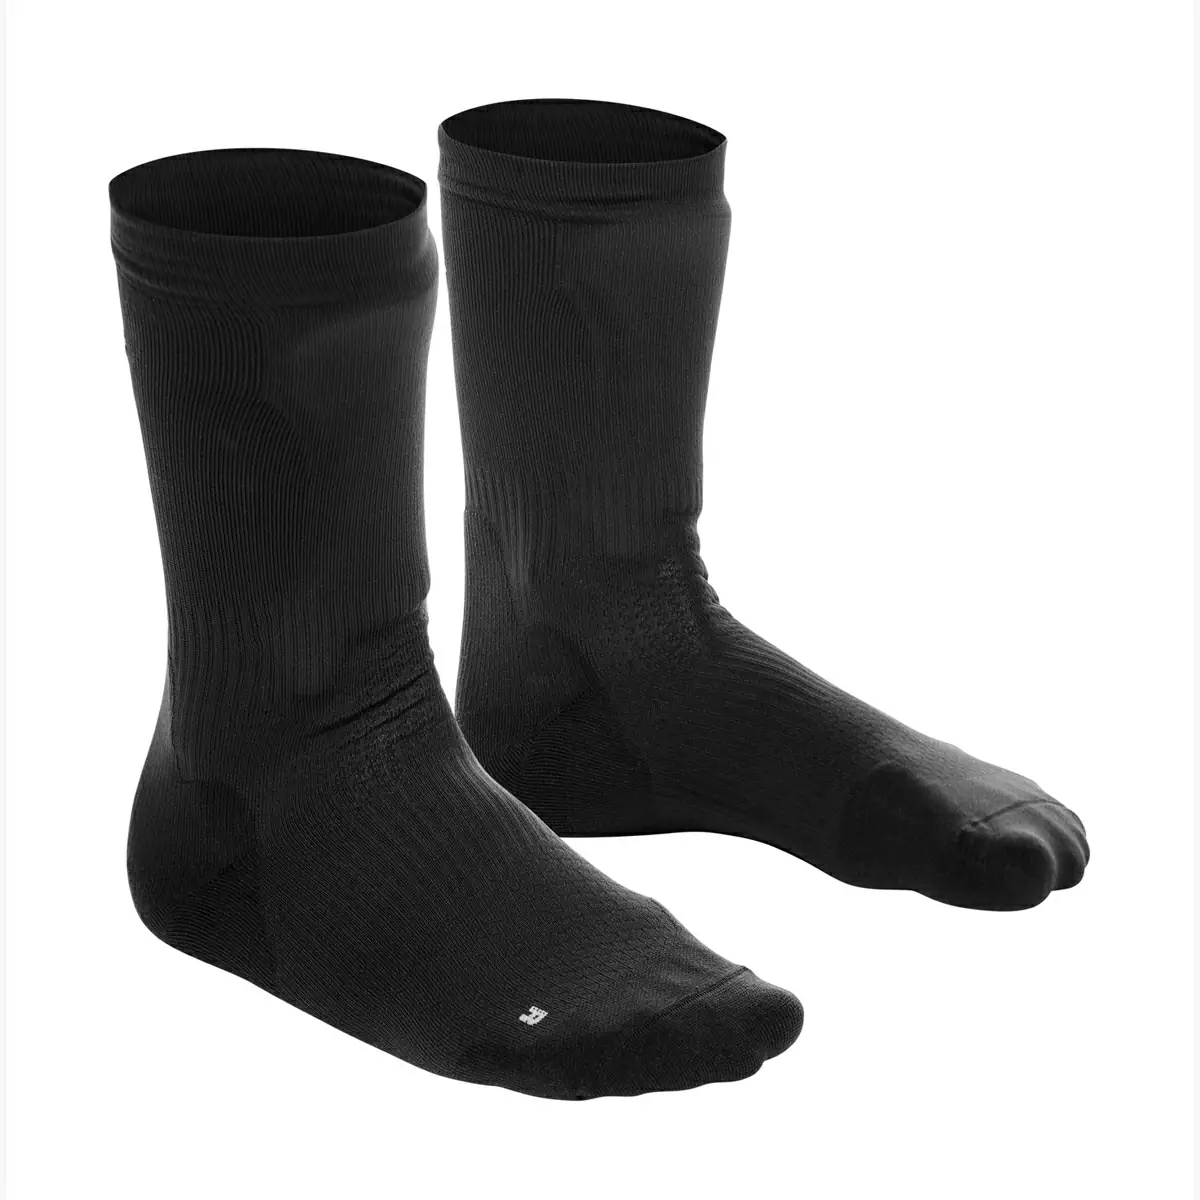 Protective Socks HGR Black Size M (39-42) - image